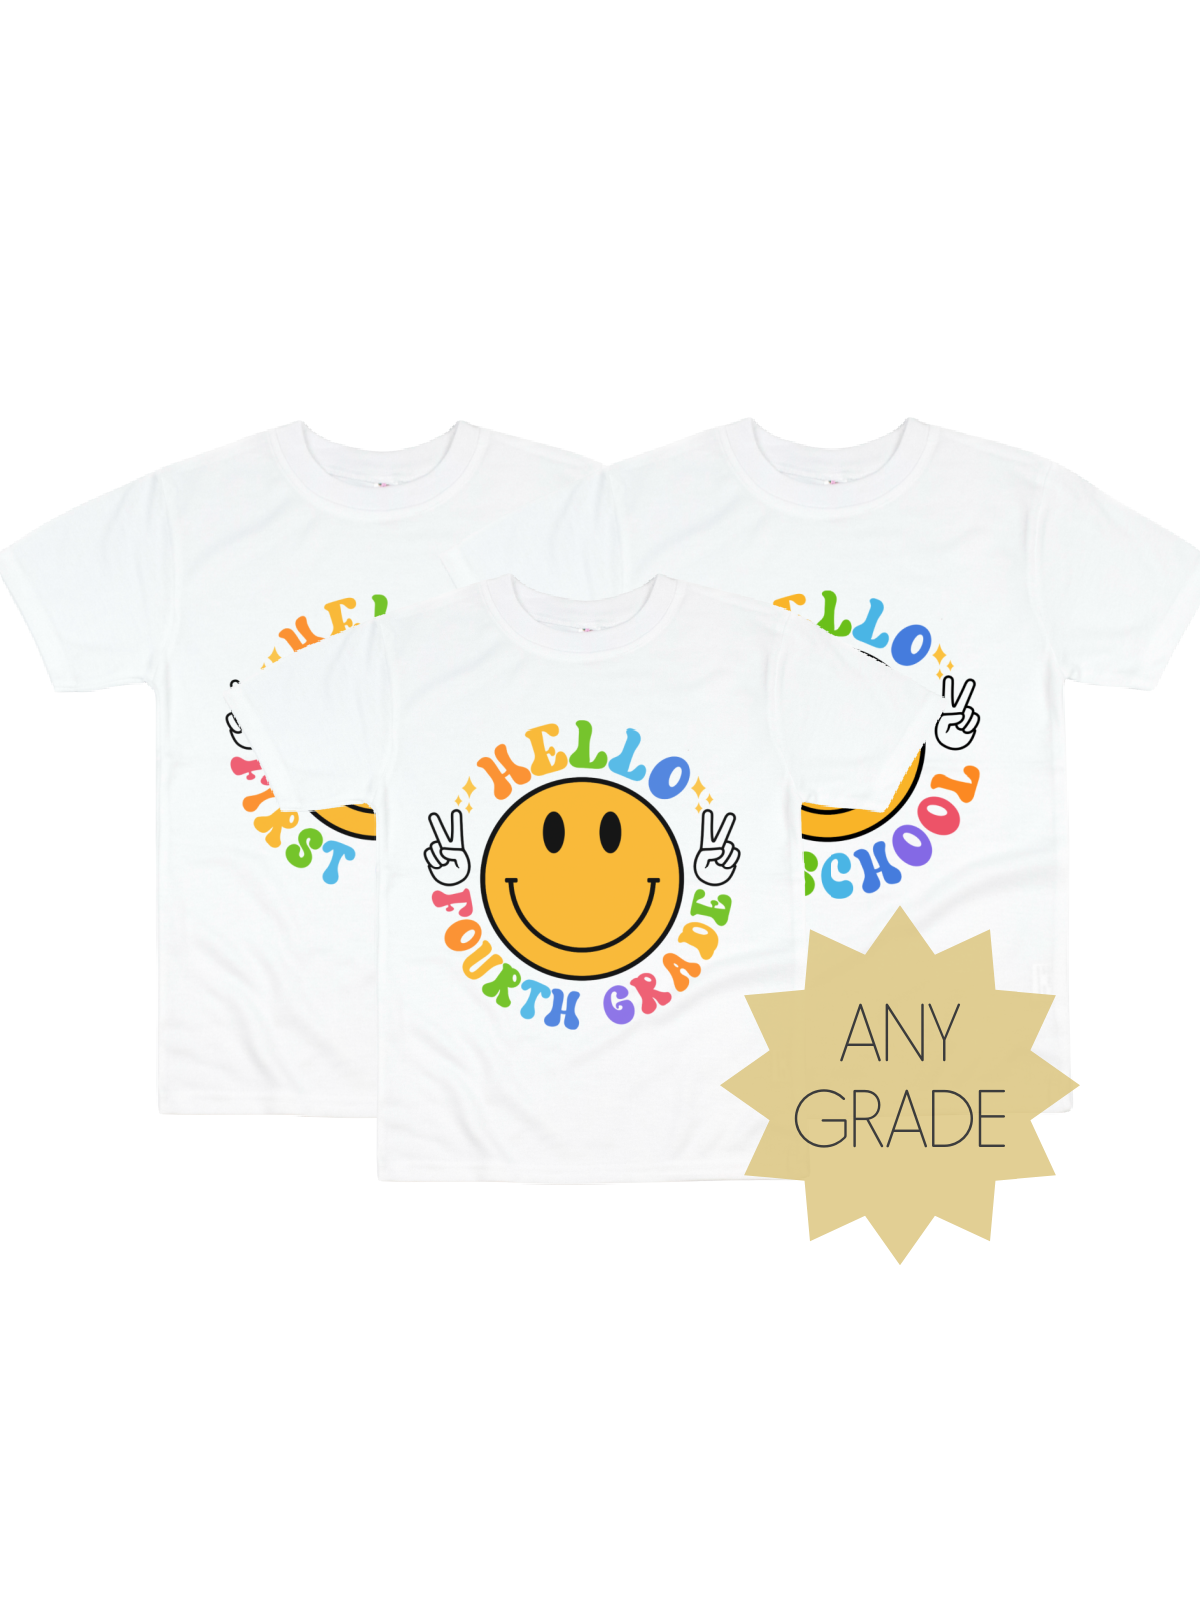 Custom 1st Day of School Kids Shirt Any Grade in White